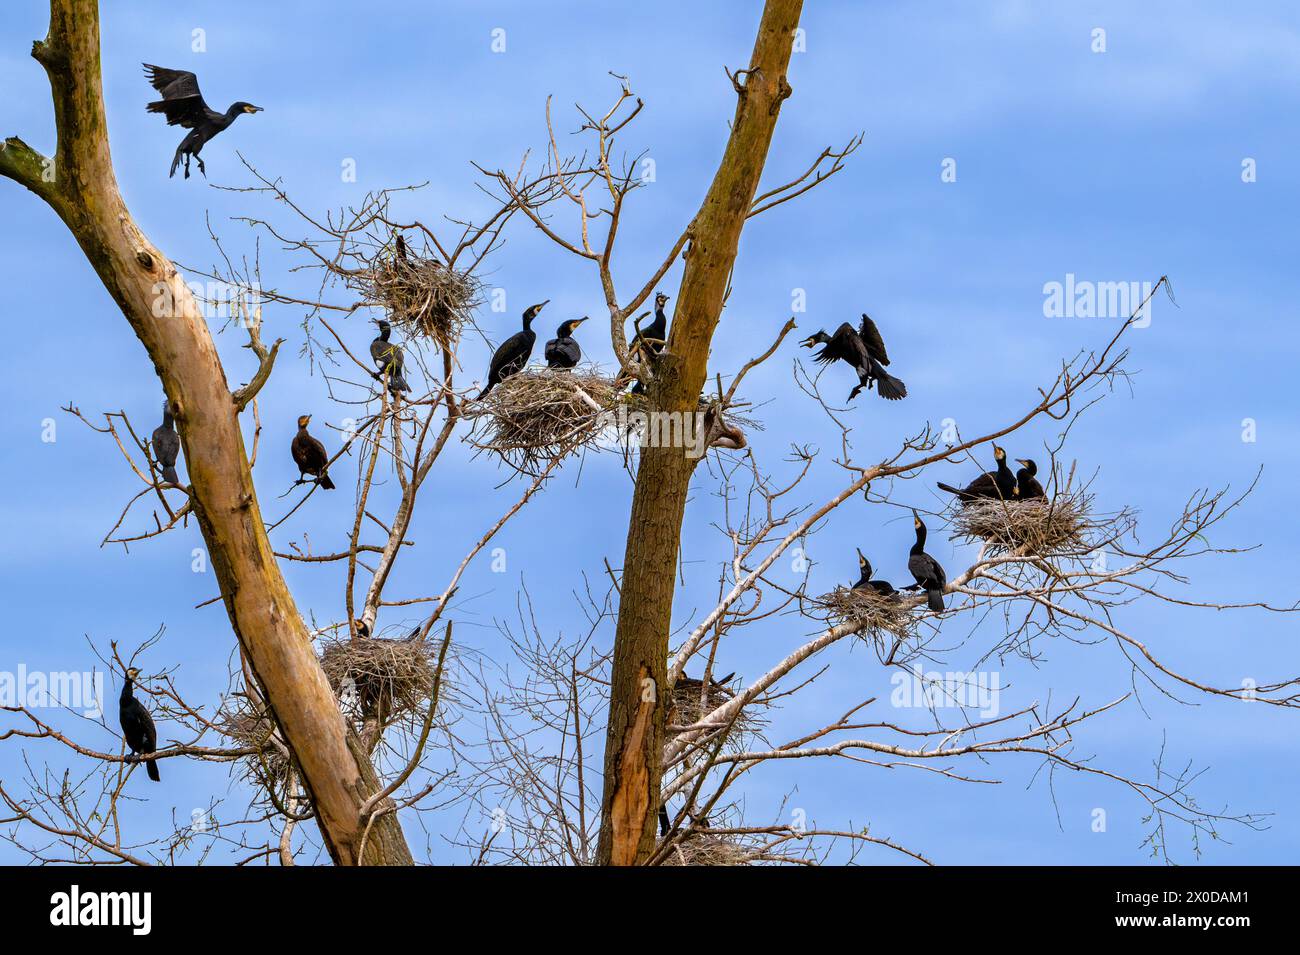 Colonie de reproduction de grands cormorans (Phalacrocorax carbo) nichant dans un arbre mort en milieu humide/marais au printemps Banque D'Images